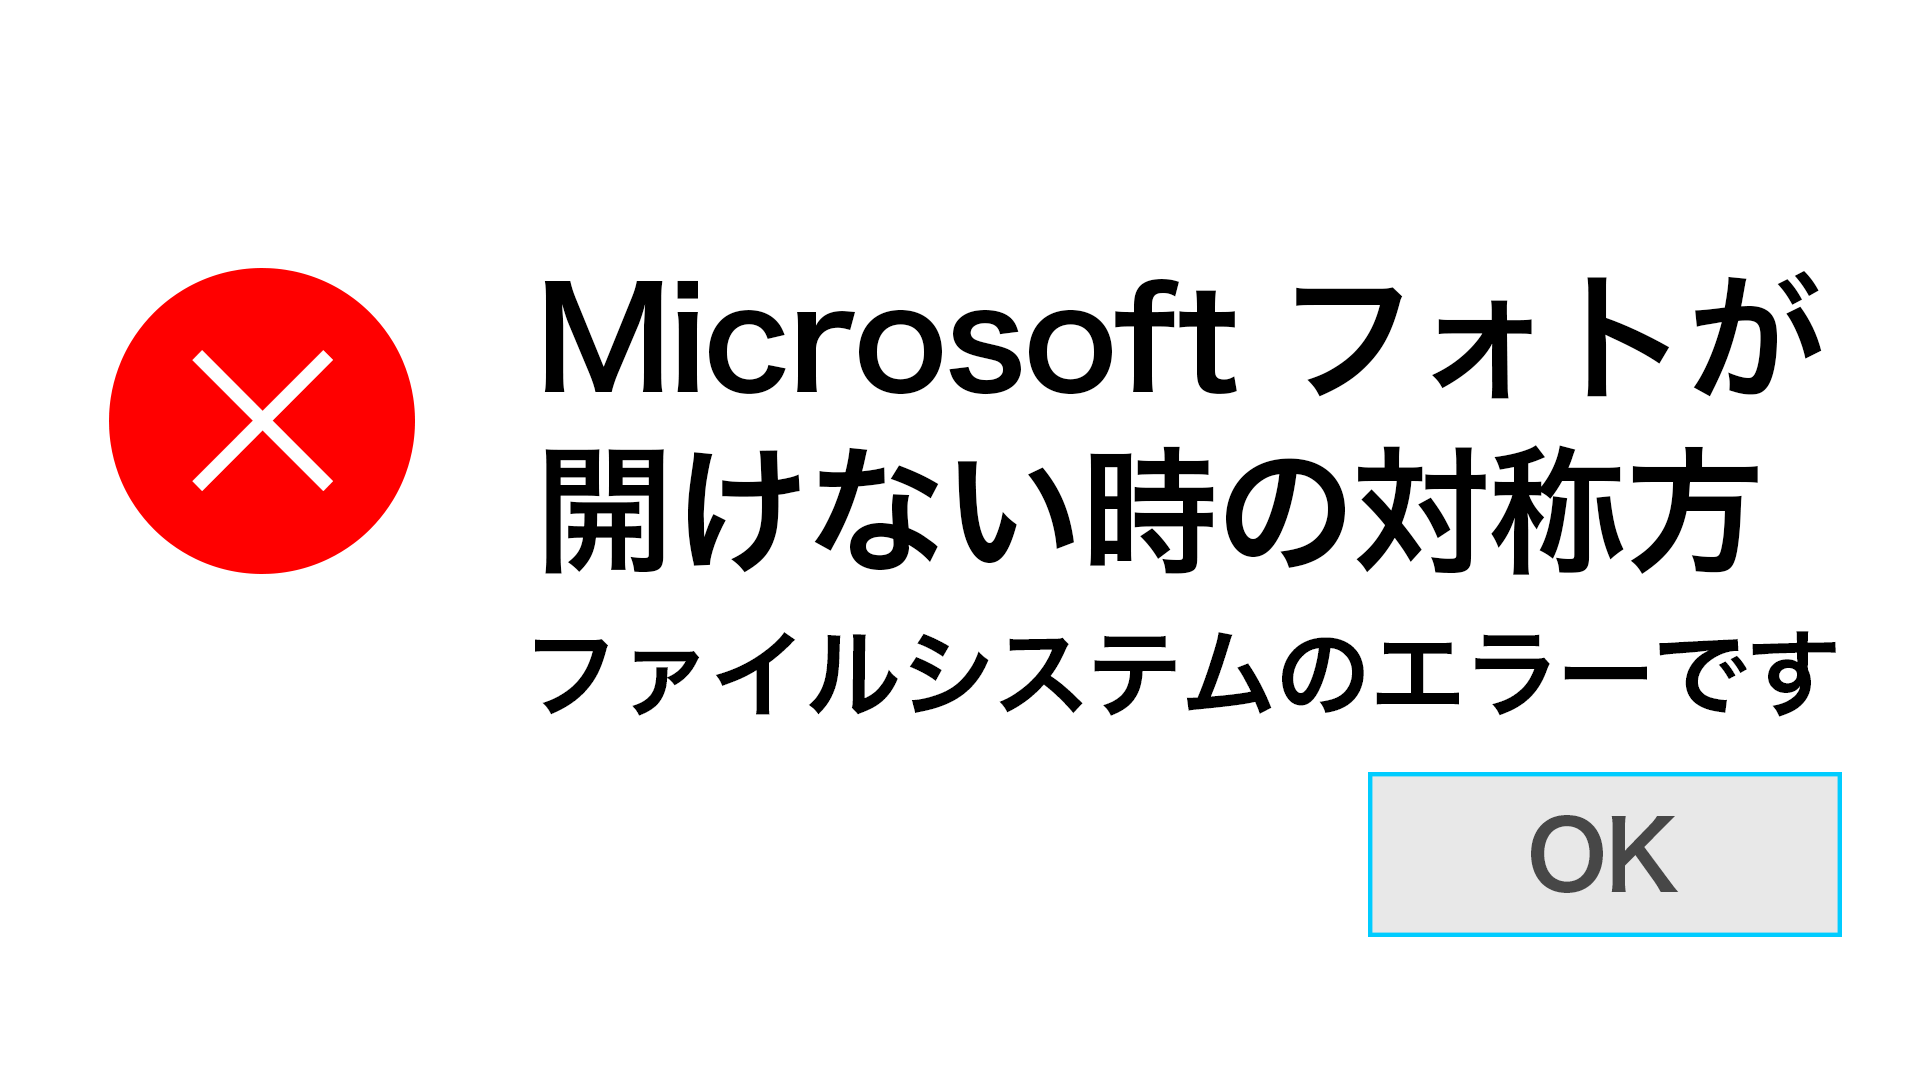 MSPhotos - 【備忘録】Microsoft フォトが壊れて起動しなくなった時の対処法 / ファイルシステムのエラーです